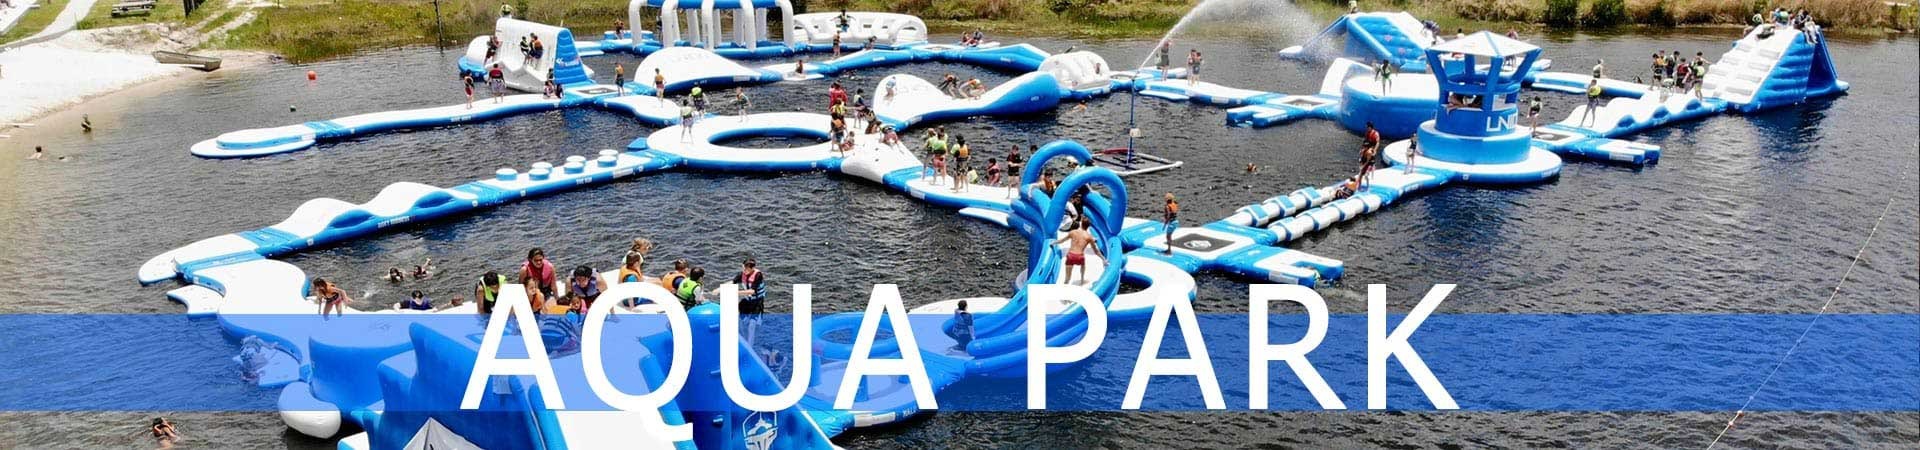 Inflatable Aqua Park, Water Park